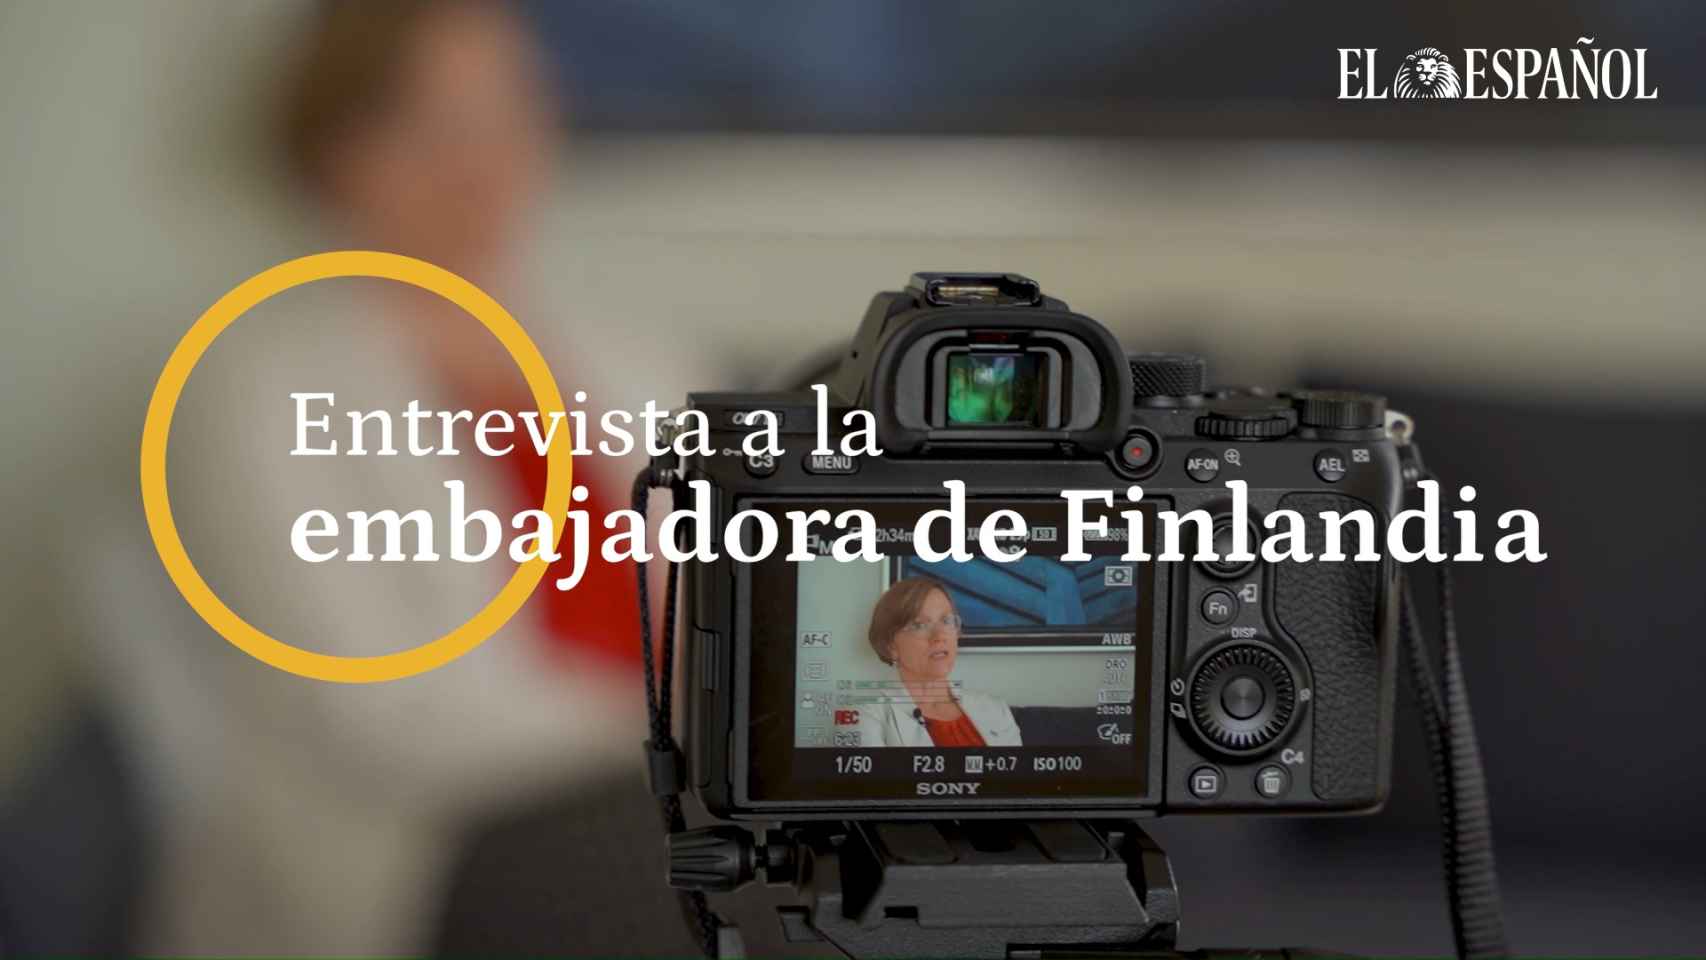 La embajadora de Finlandia en España, Sari Rautio, contesta a las preguntas de El Español